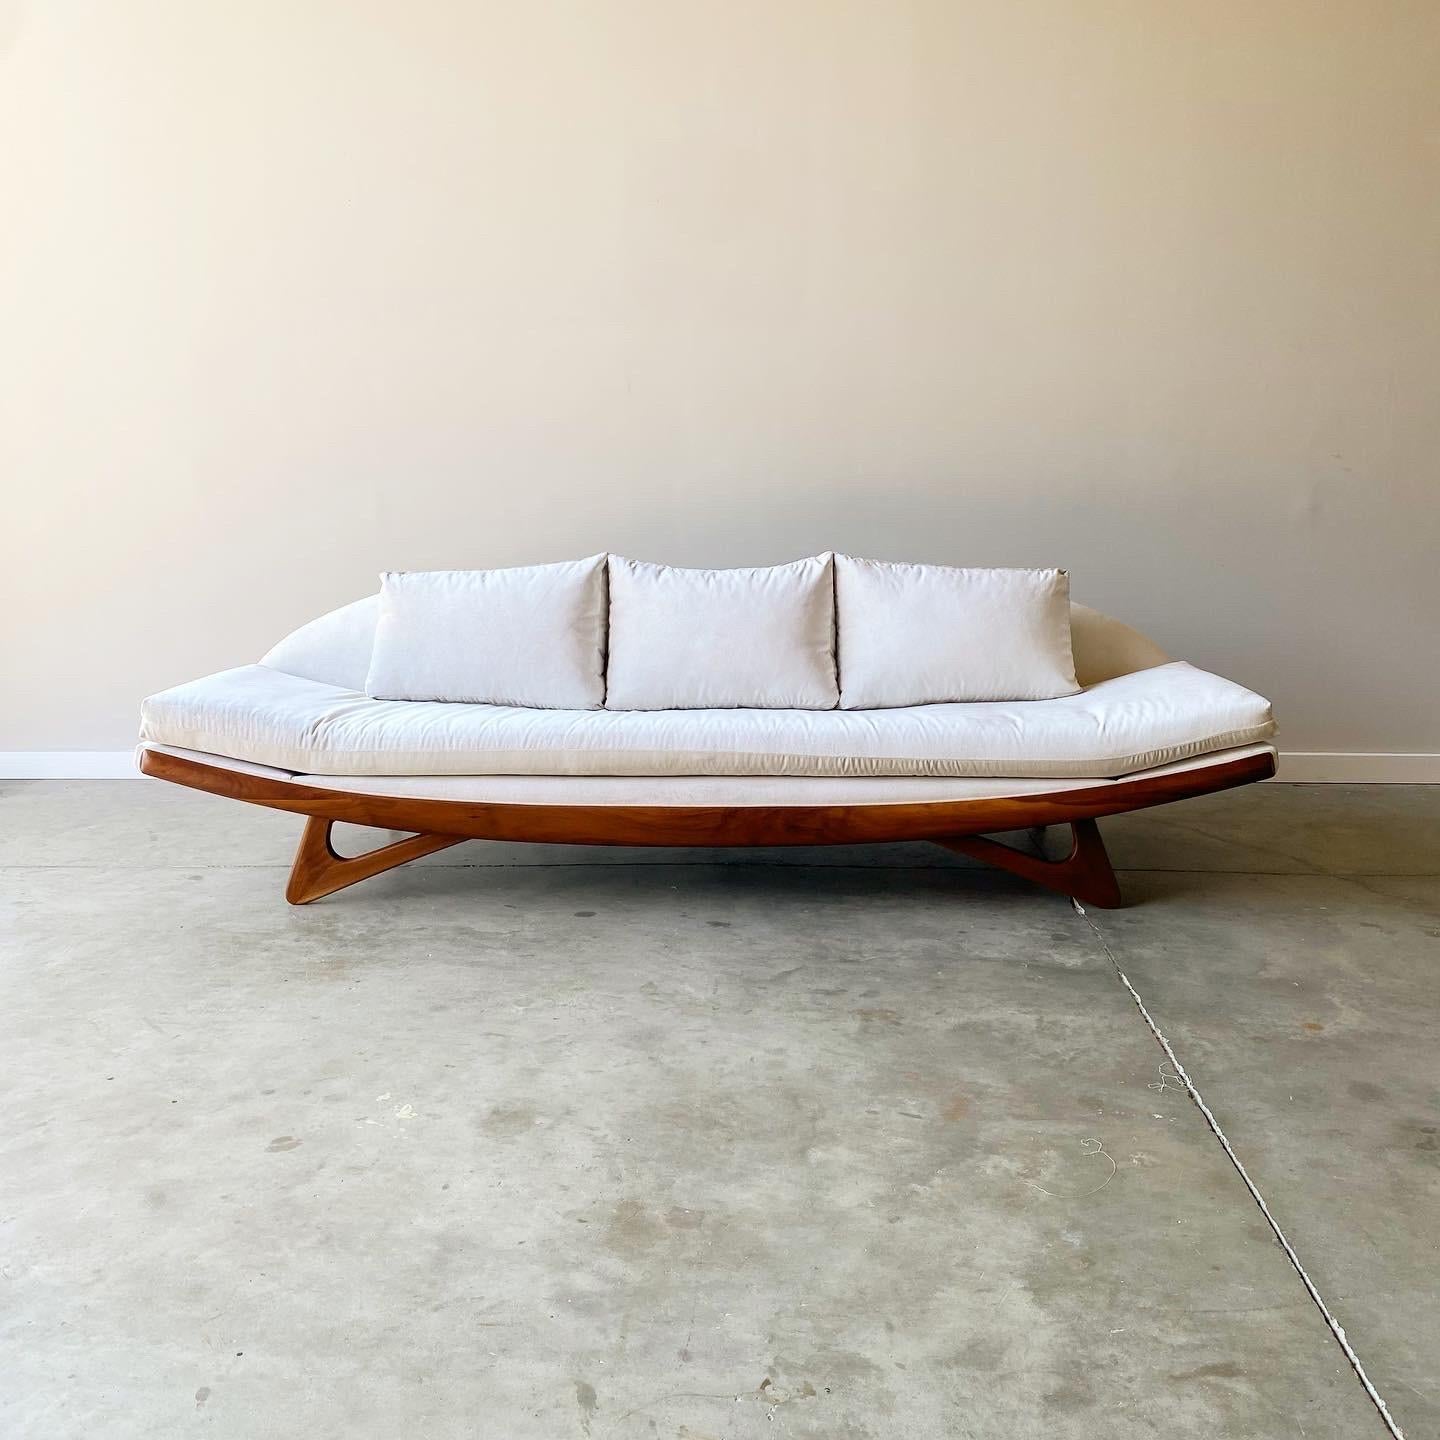 Un étonnant canapé de forme gondole d'Adrian Pearsall, de Craft Associates.  Nouvellement recouvert d'un velours ivoire et d'une base en noyer restaurée.  Une forme saisissante et une silhouette sculpturale pour ce classique de la modernité du